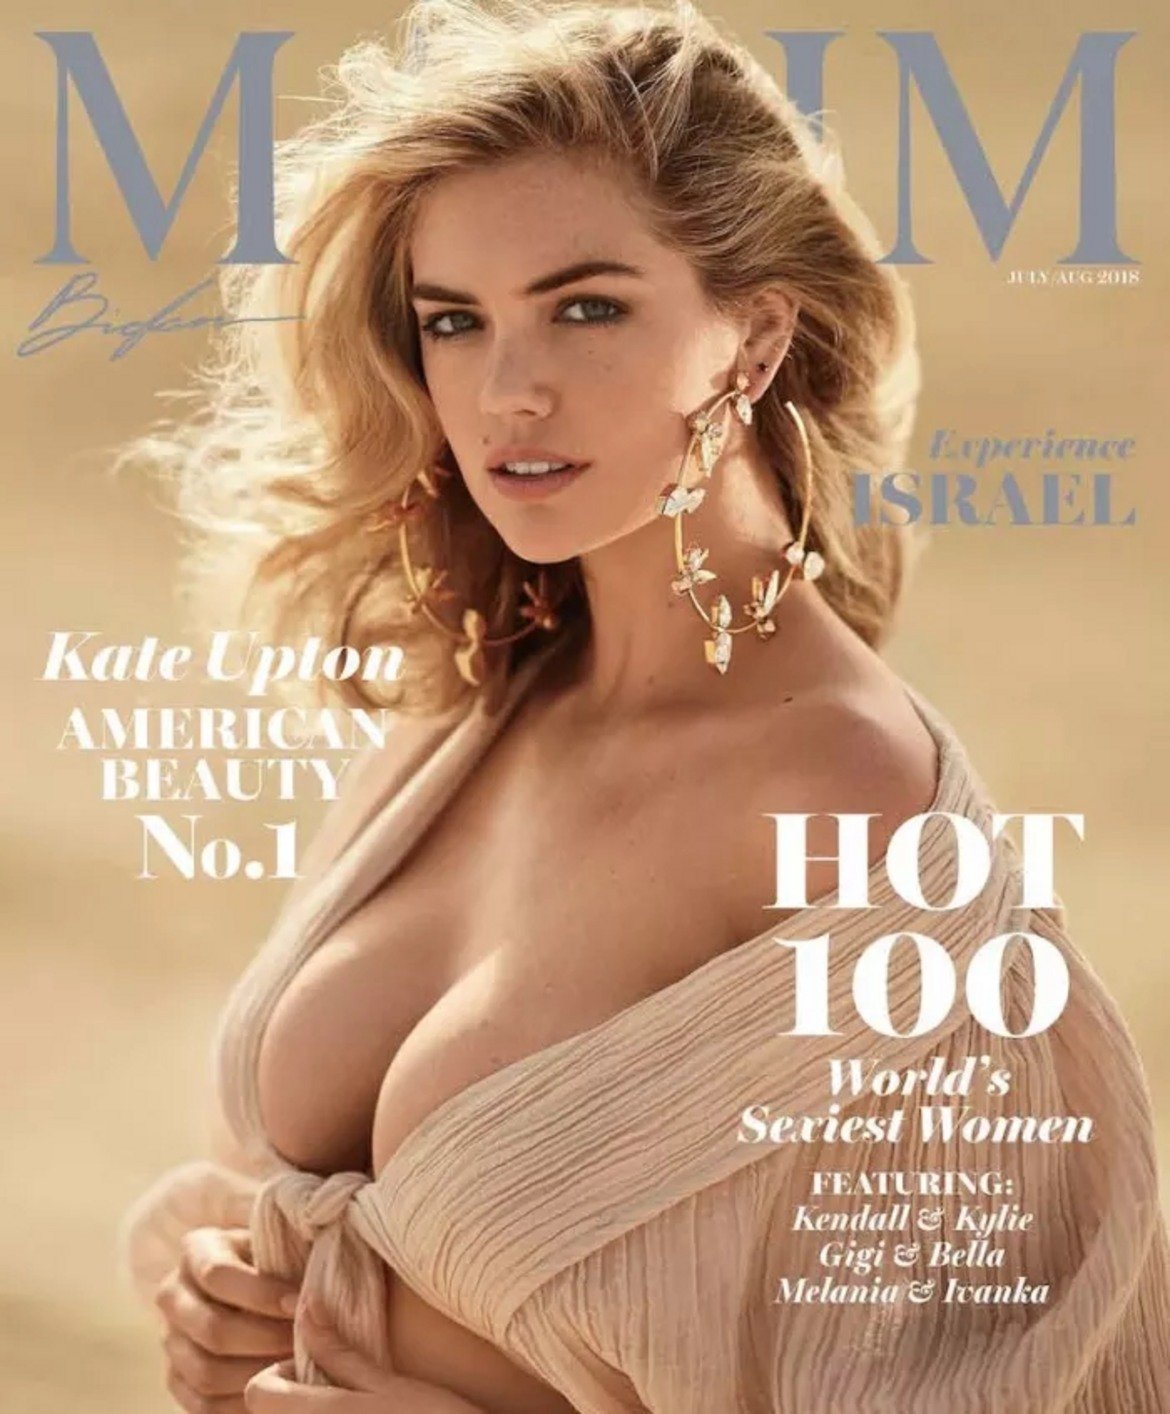 Бременността на 26-годишния модел определено личи на споделената от нея снимка във Facebook, но Ъптън продължава да е все така очарователна. Все пак наскоро Maxim я определи за най-горещата жена на годината.